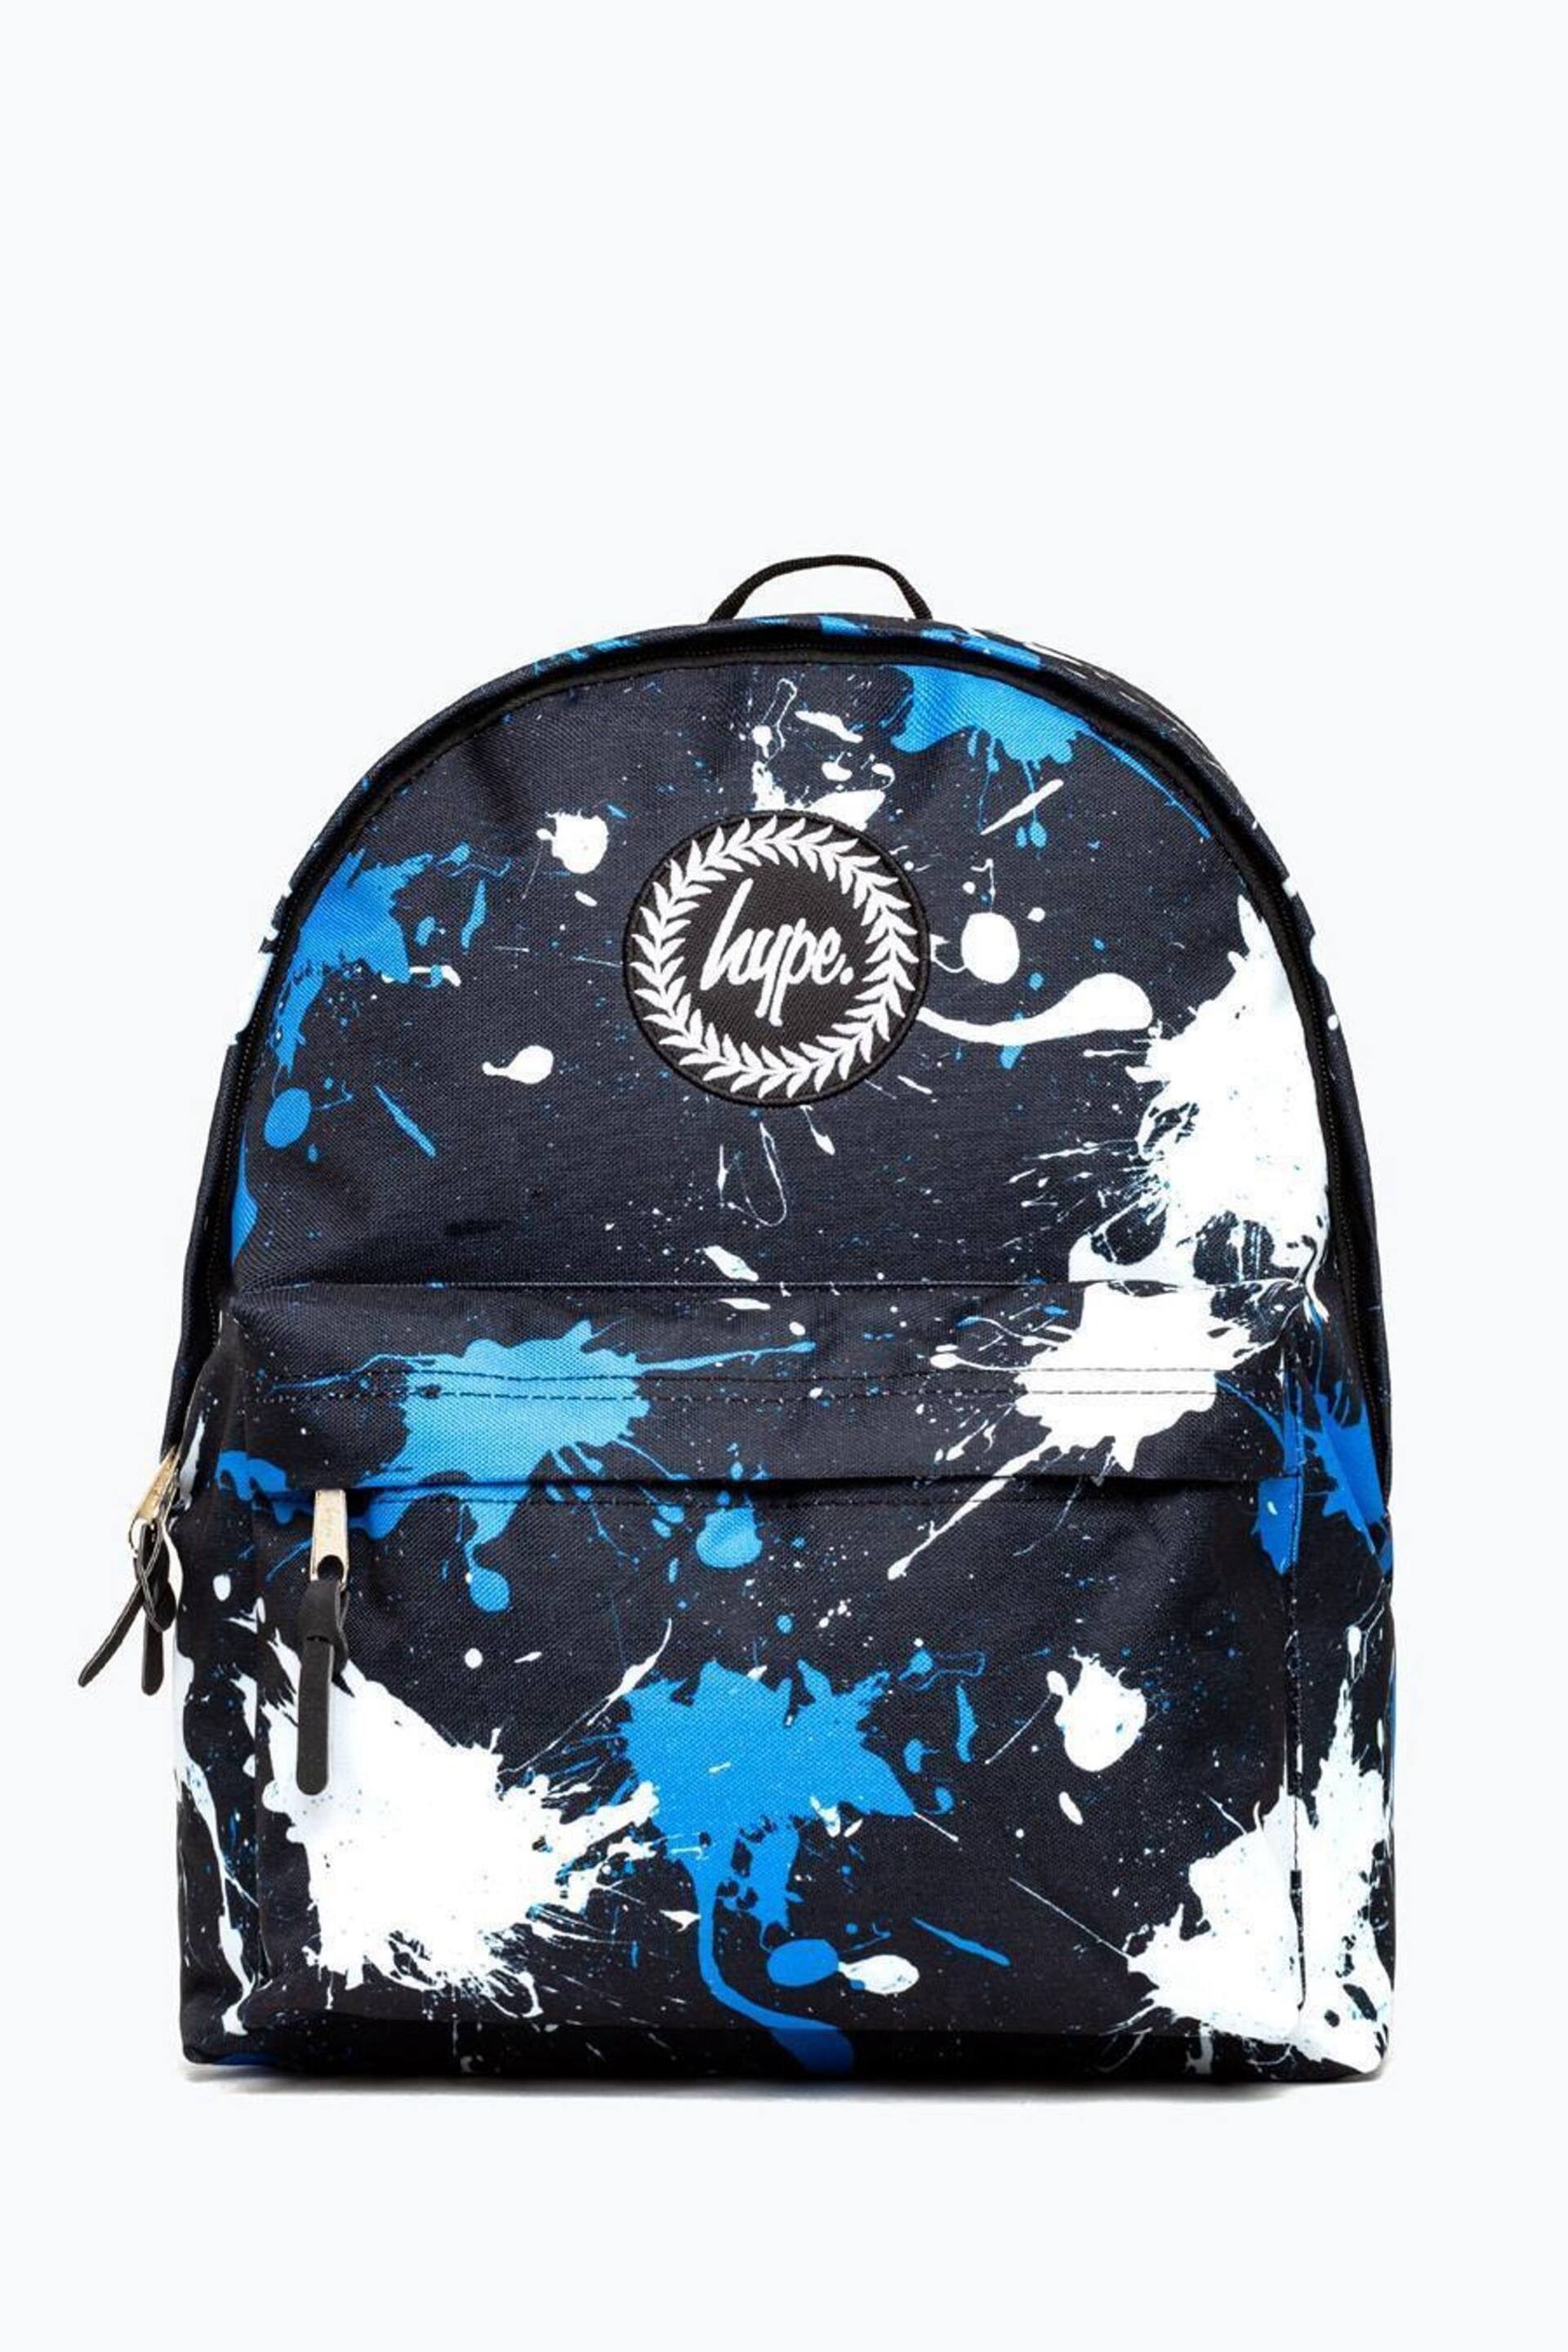 Hype. Black Splatter Backpack - Image 1 of 8